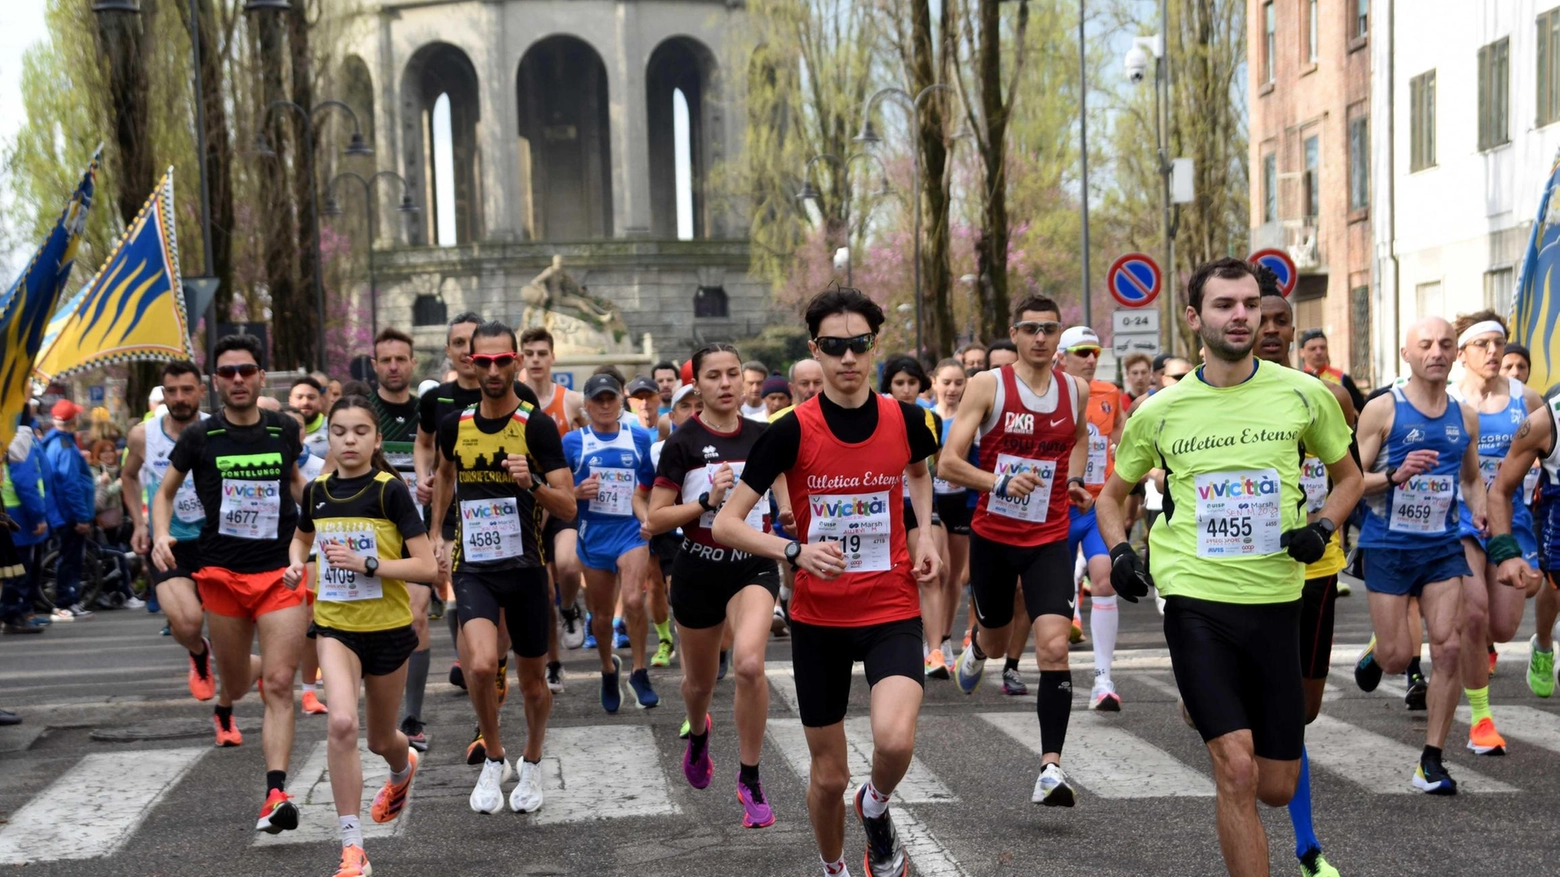 La 40esima edizione di Vivicittà a Ferrara celebra sport e promozione sociale con corsa, camminata e villaggio associazioni. Manifestazione nazionale con novità e attenzione all'ambiente.